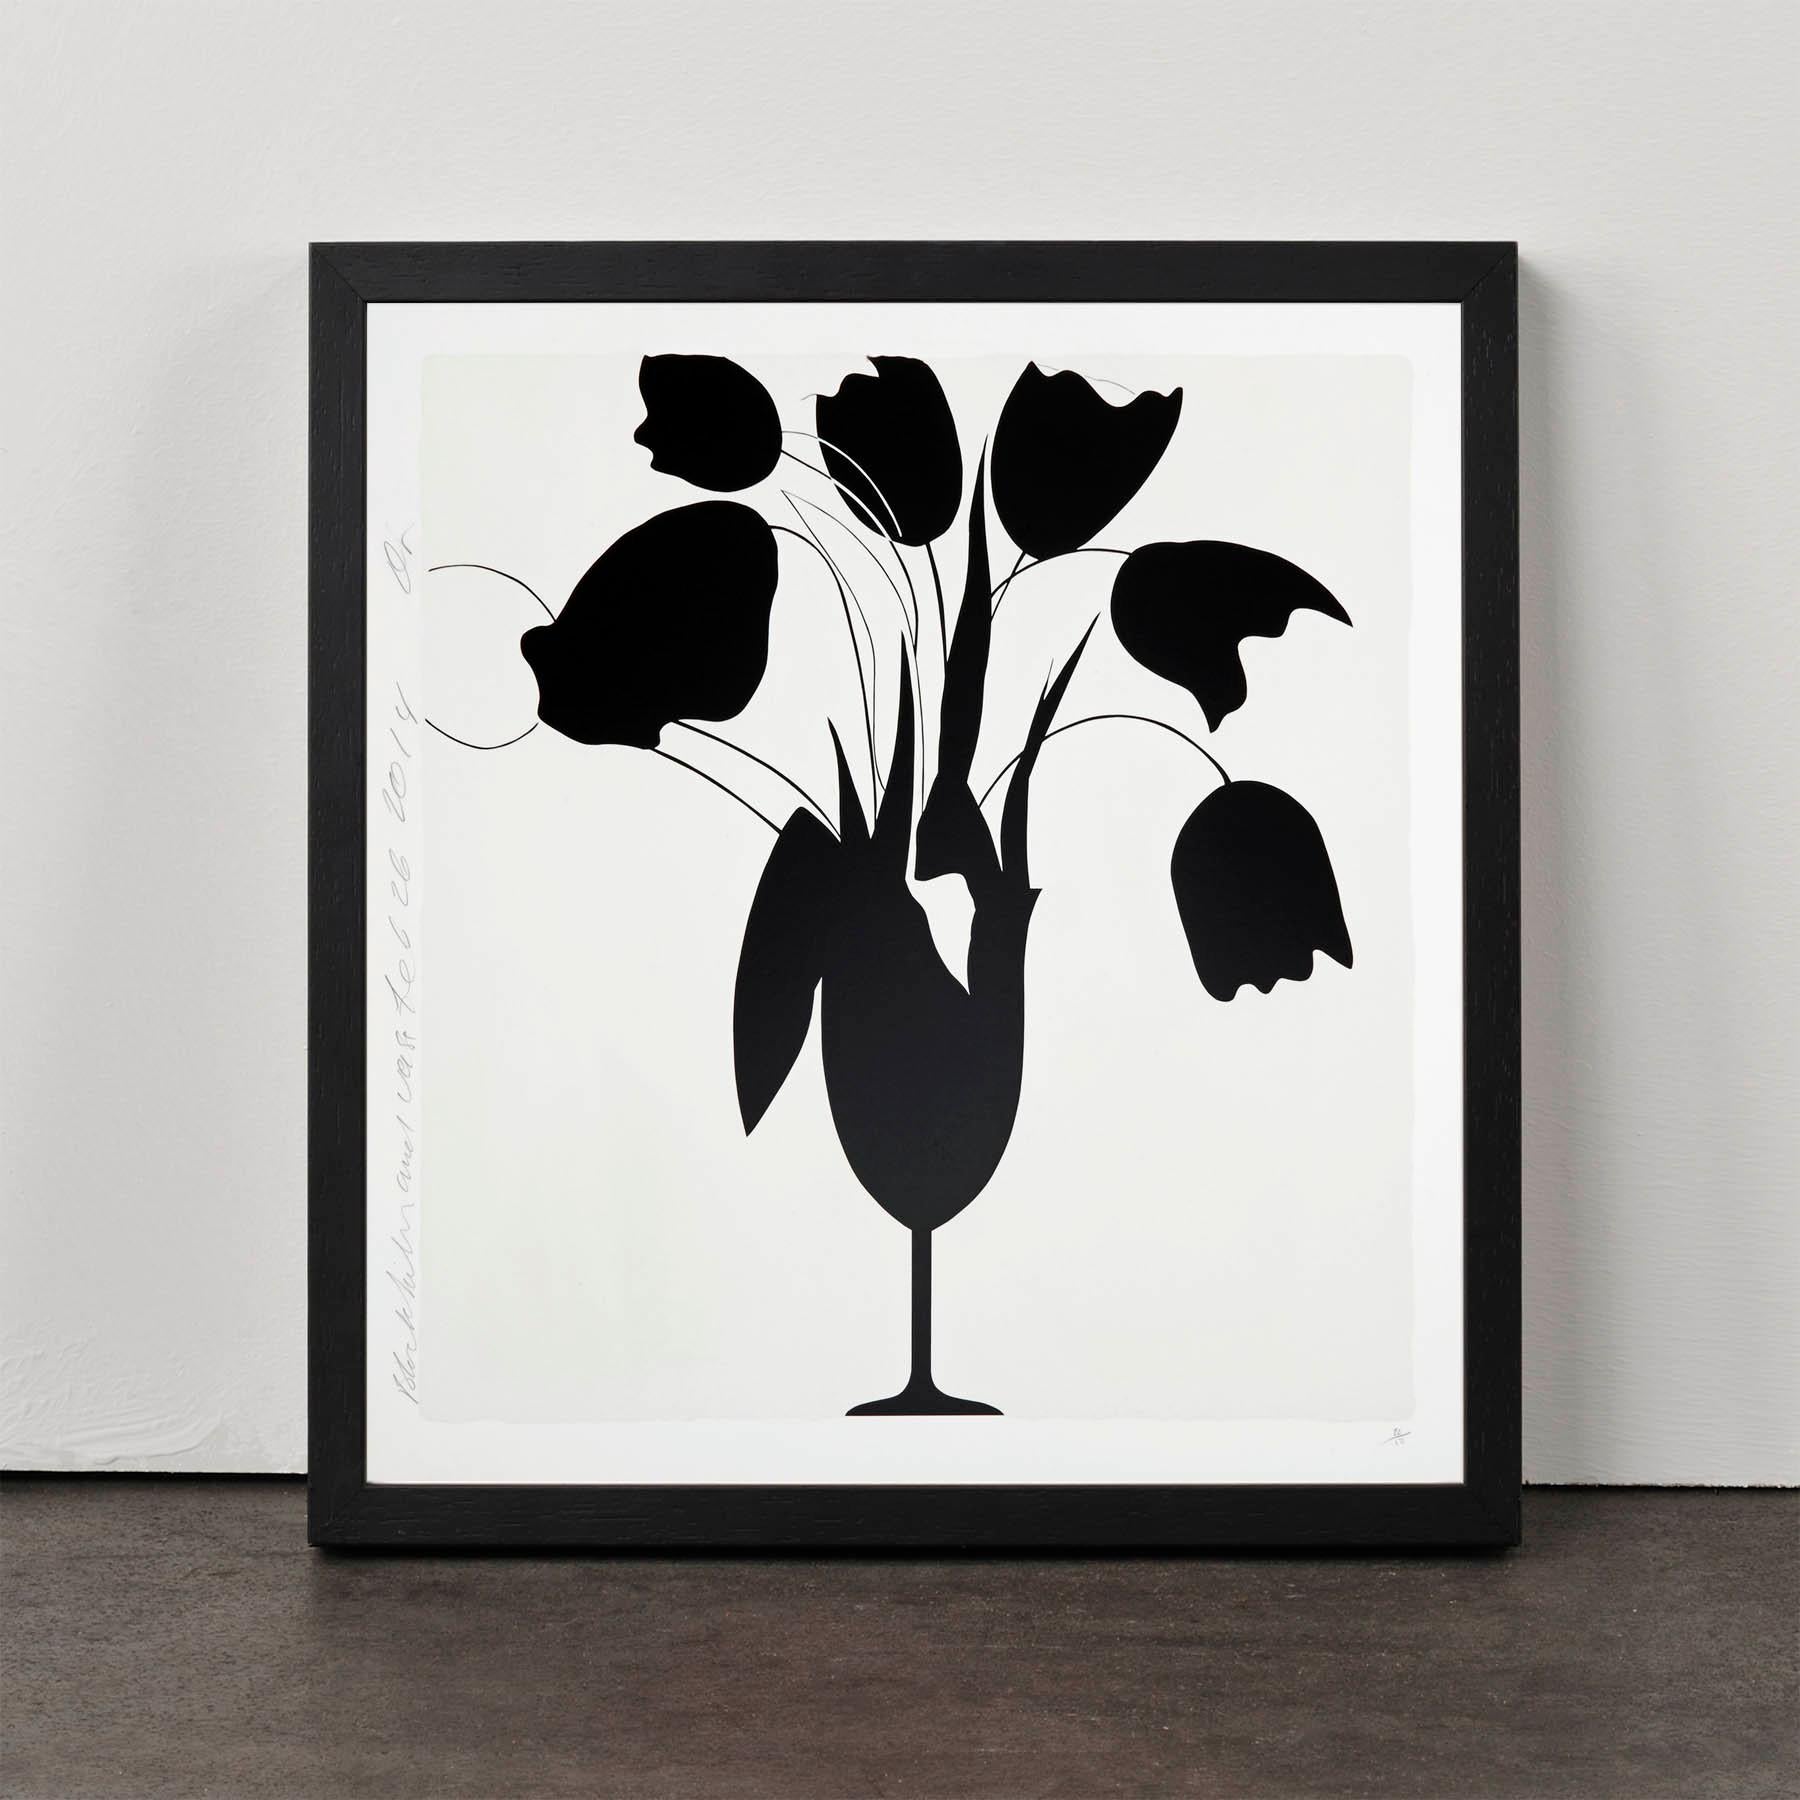 Tulips et vase noirs contemporains, 21e siècle, sérigraphie, édition limitée - Print de Donald Sultan